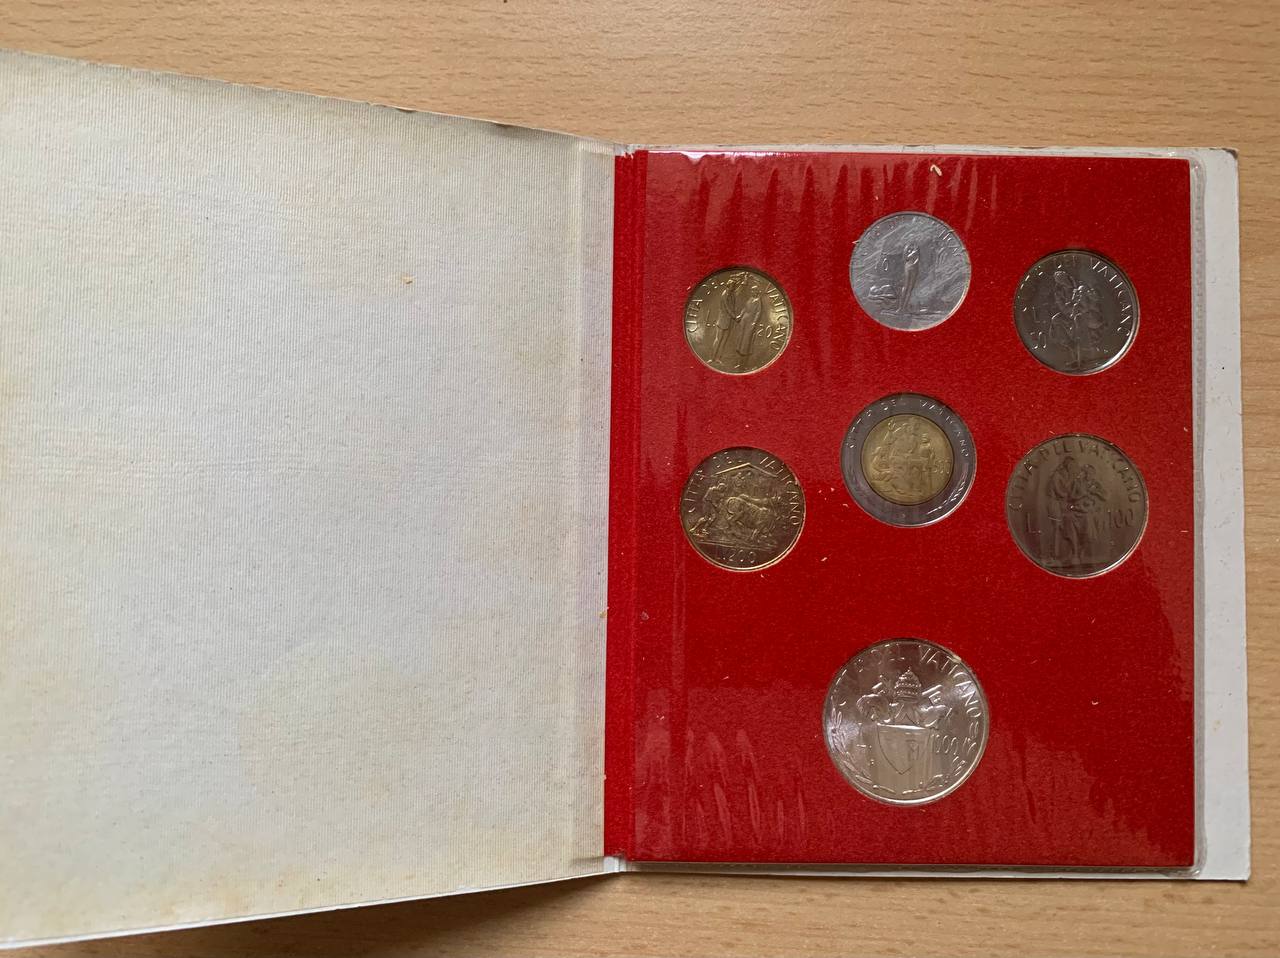  Jahresset von Vatikan 1982 BU (7 Münzen)   